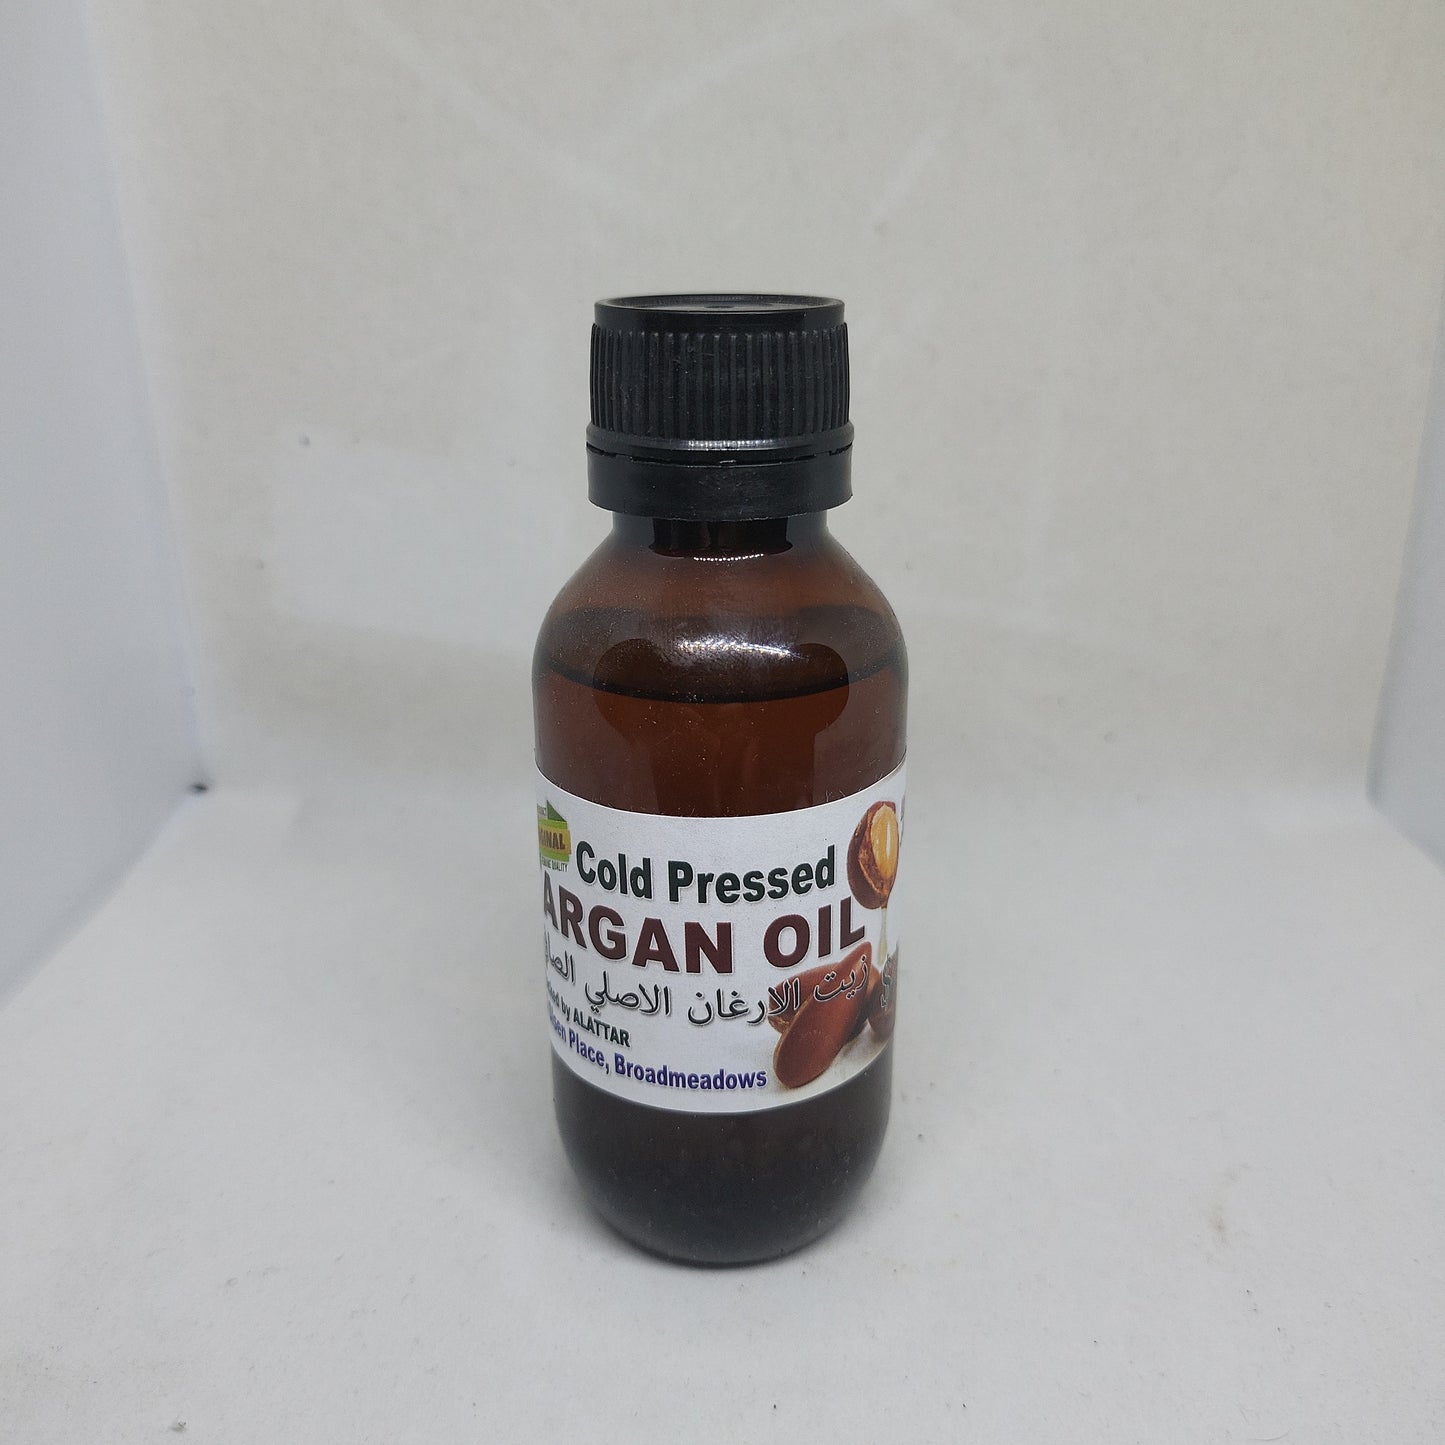 Cold Pressed Organic Argan Oil